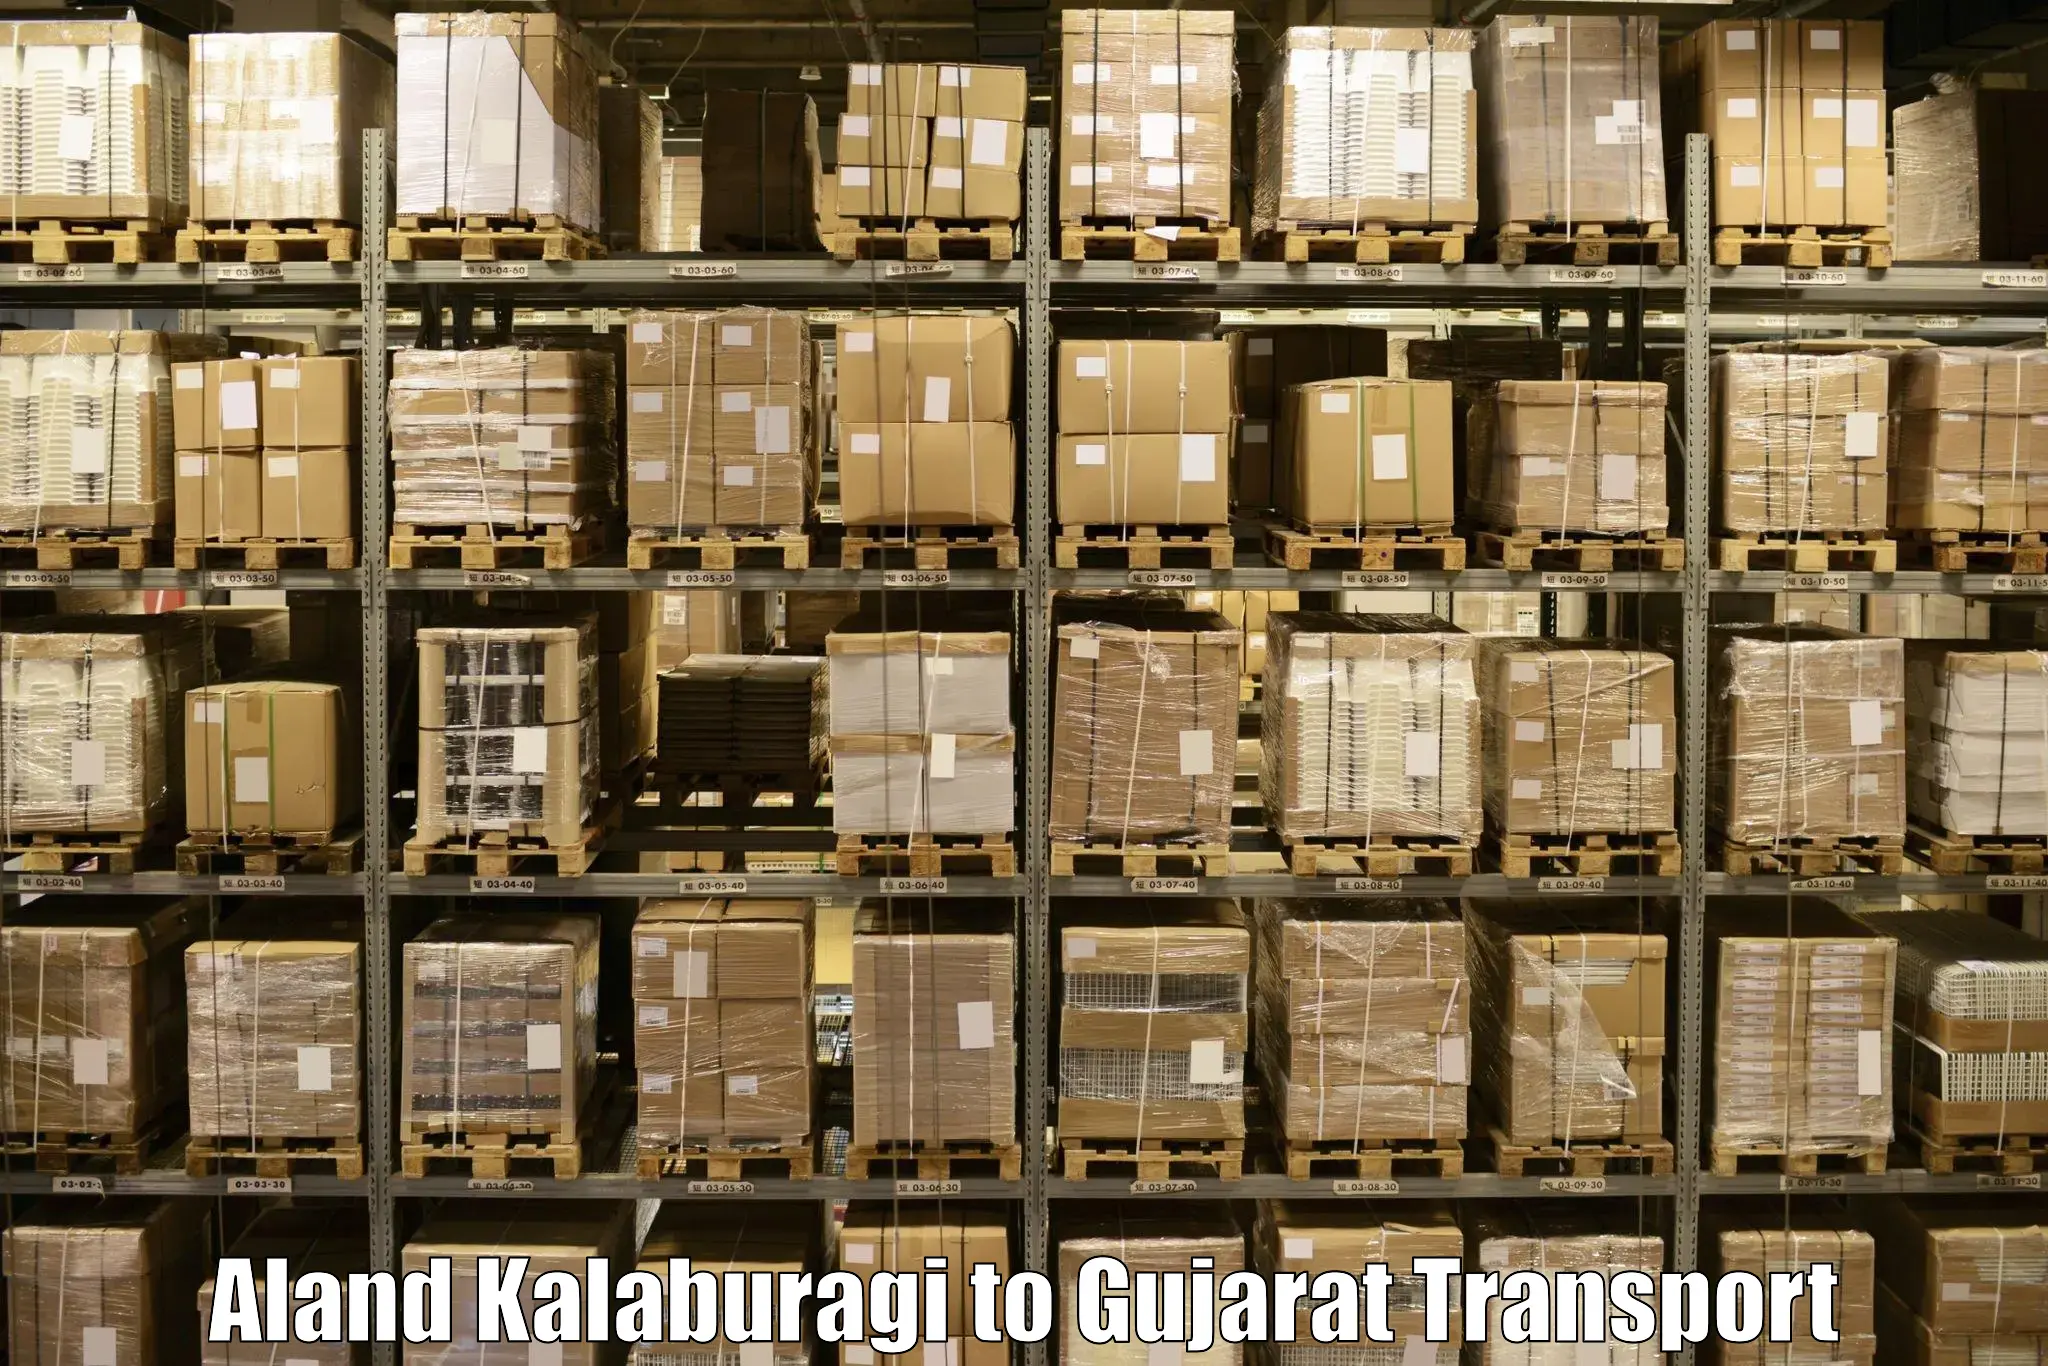 All India transport service Aland Kalaburagi to Gujarat